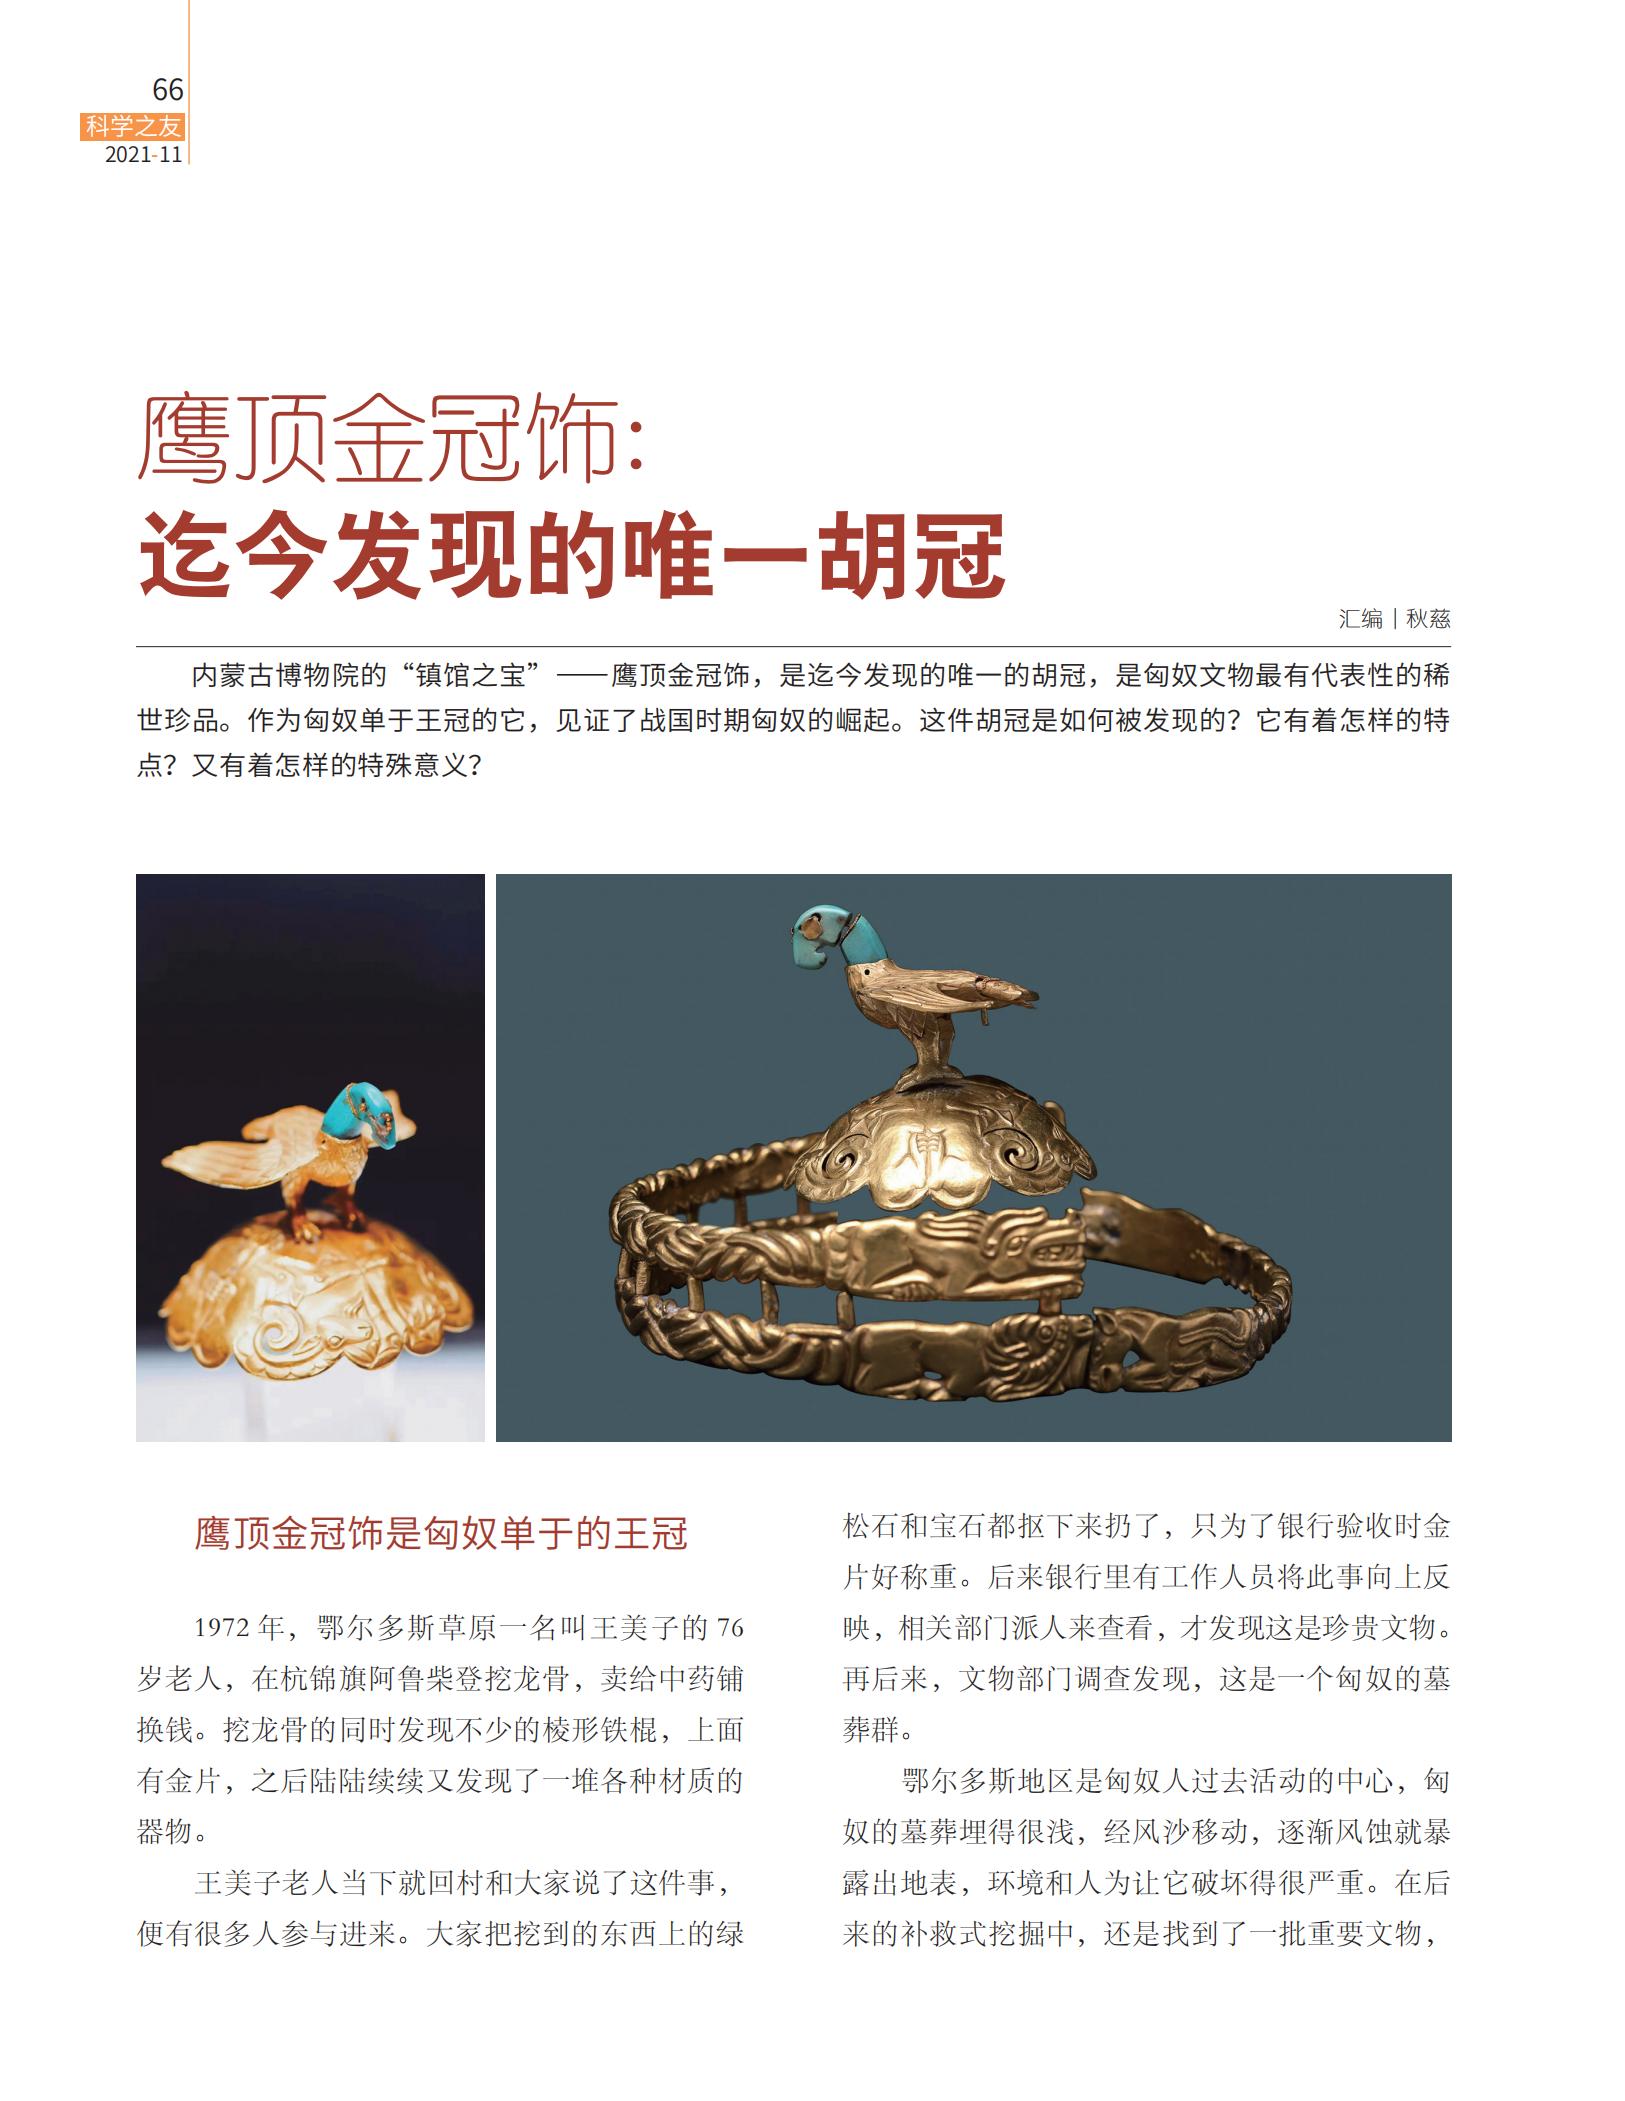 胡冠,鹰顶金冠饰,　内蒙古博物院